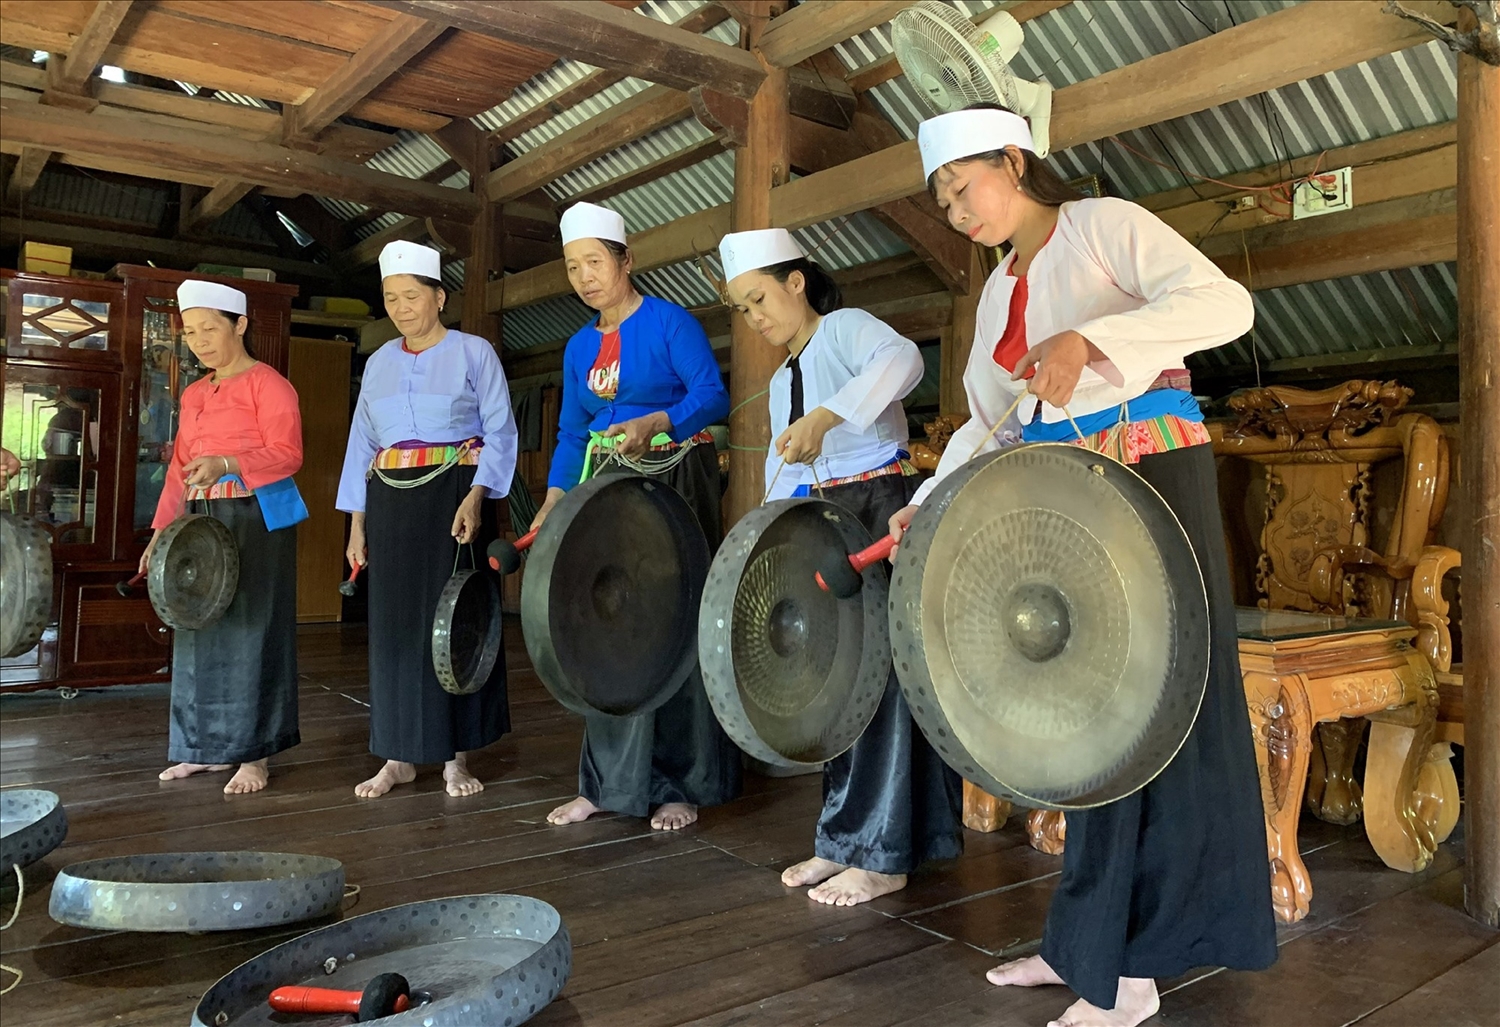  Đội cồng chiêng thôn 3, xã Trà Giang, huyện Bắc Trà My, tỉnh Quảng Nam vẫn định kỳ đội tổ chức các buổi sinh hoạt, tập luyện đánh cồng chiêng